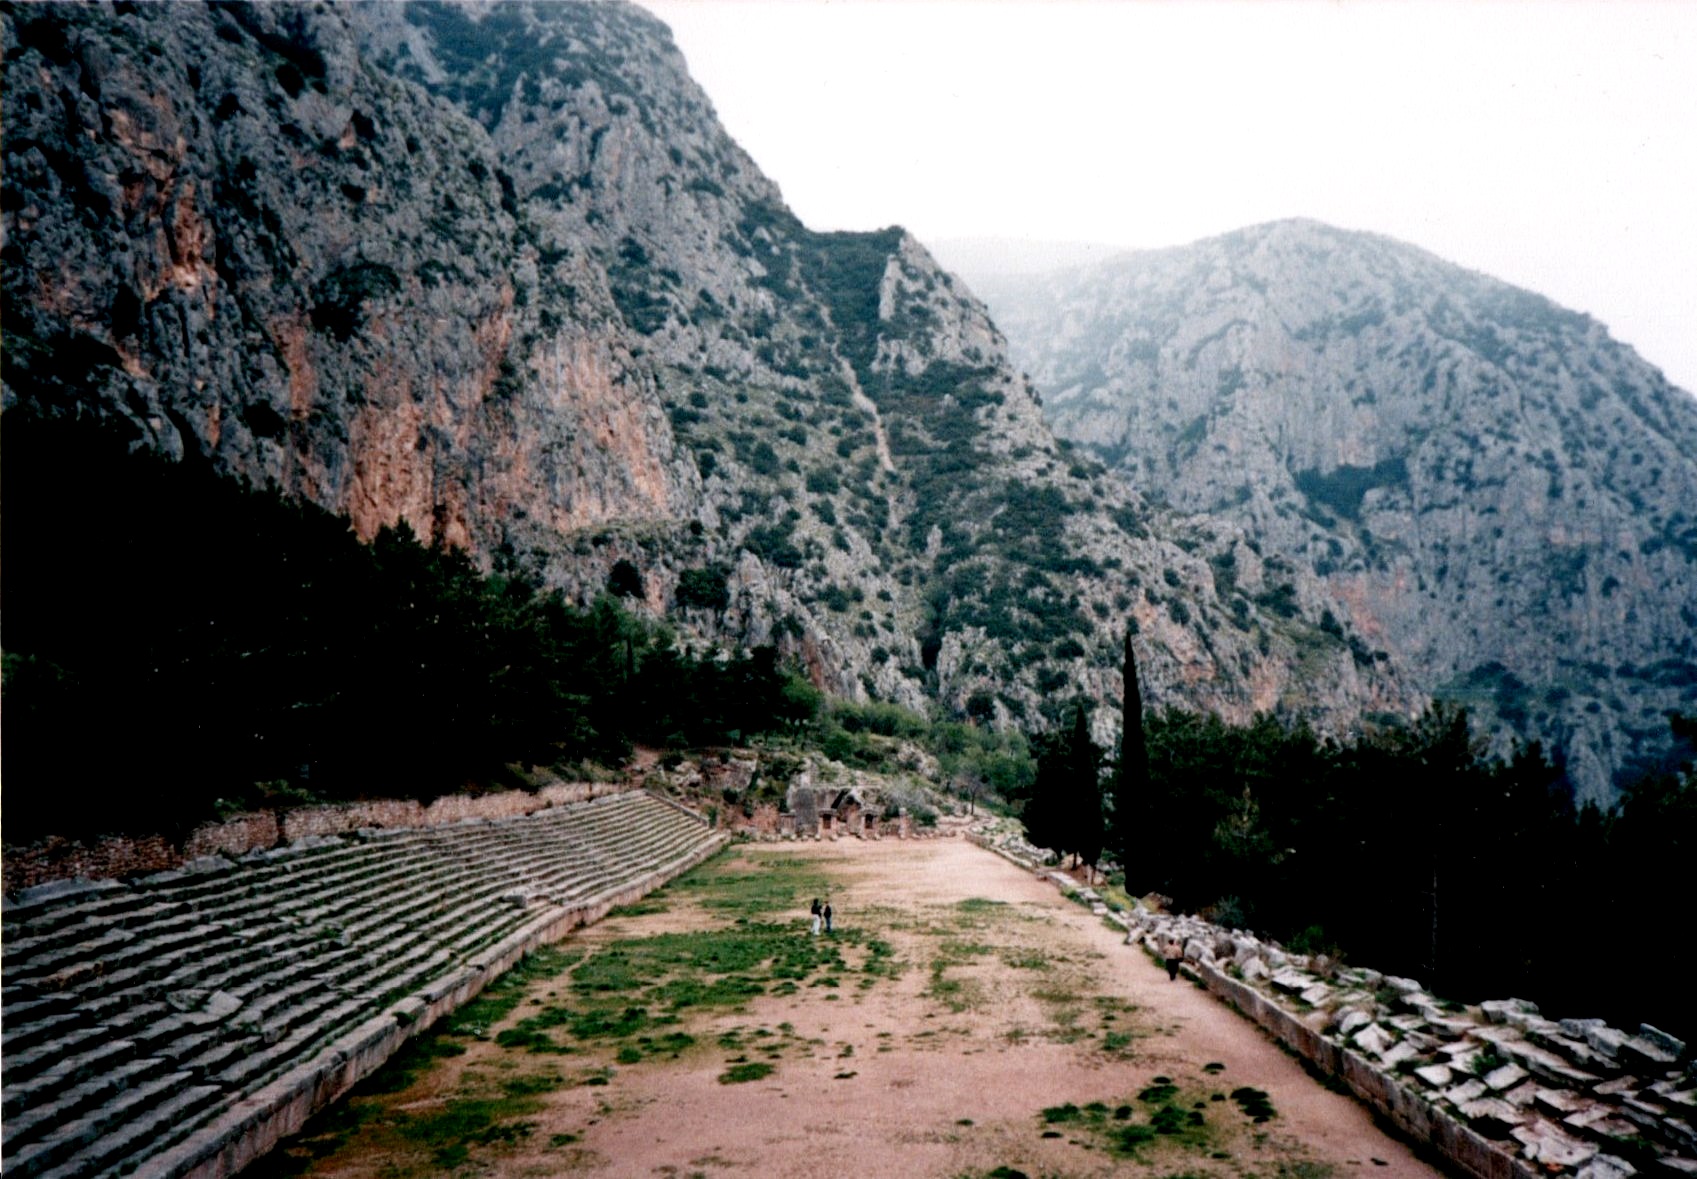 The Theatre at Delphi in Greece